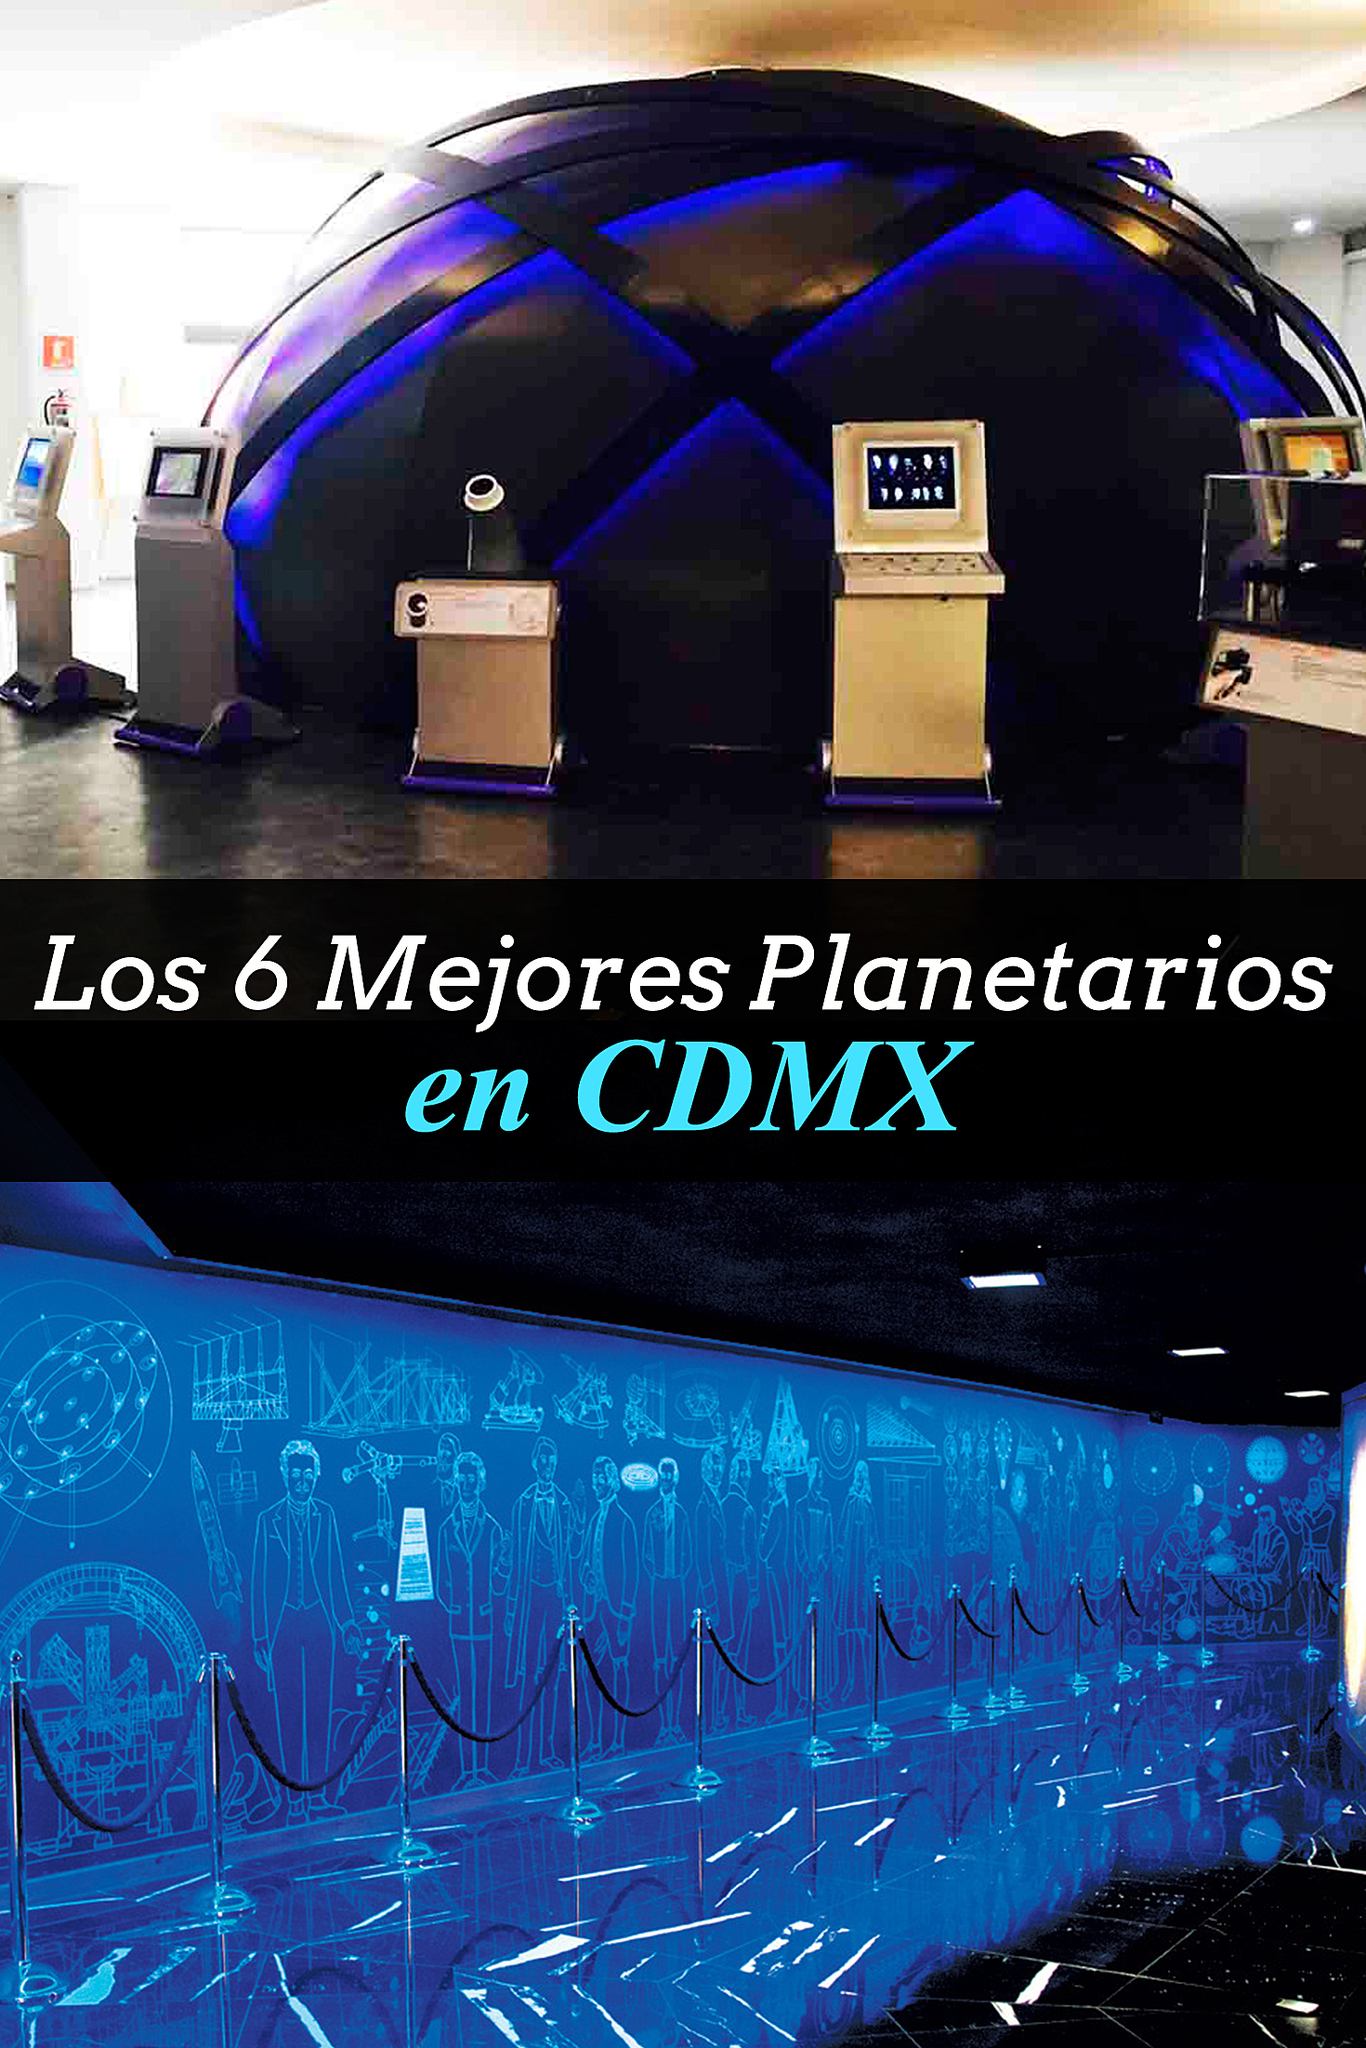 Los 6 mejores planetarios en CDMX que tienes que conocer